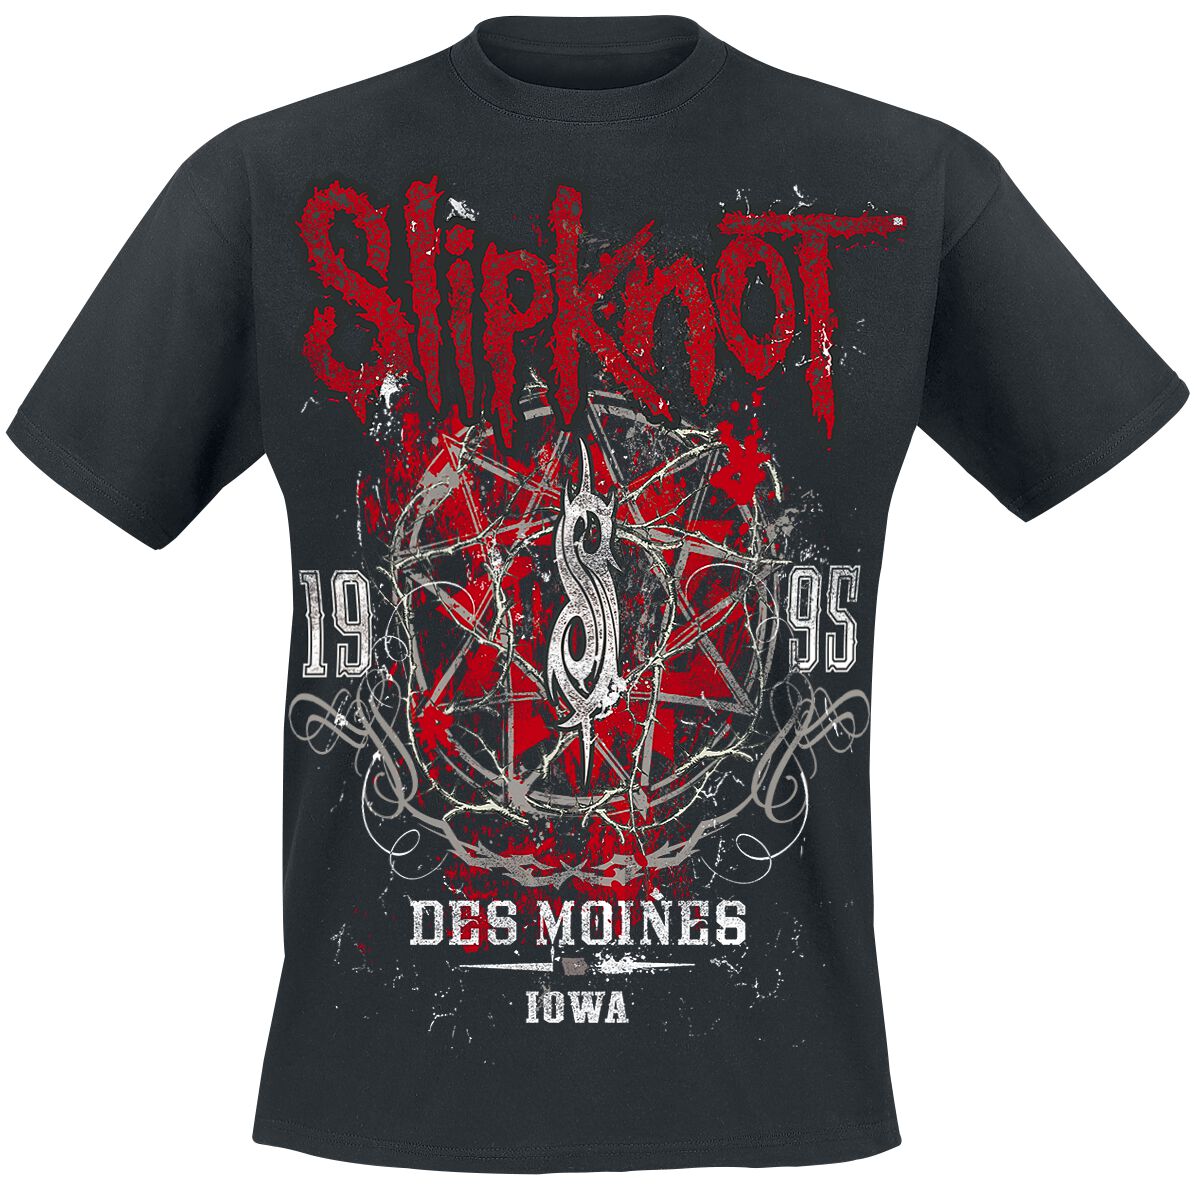 Slipknot T-Shirt - Iowa Star - S bis 5XL - für Männer - Größe 4XL - schwarz  - Lizenziertes Merchandise!